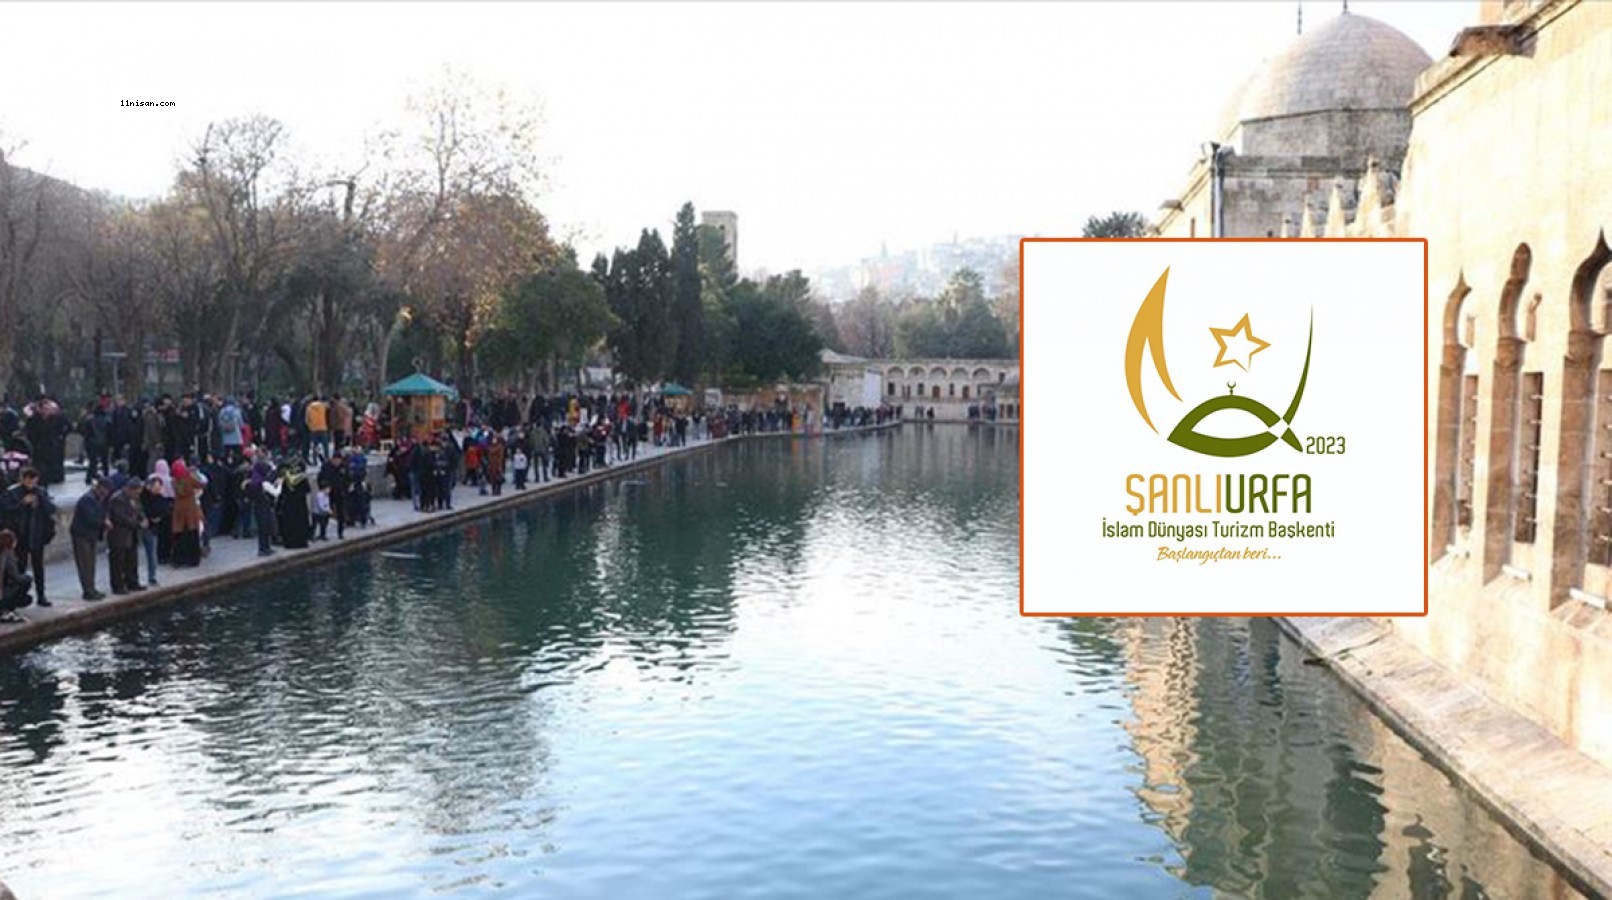 İşte Urfa’nın 2023 Turizm Başkenti etkinliklerinde kullanacağı logo ve slogan